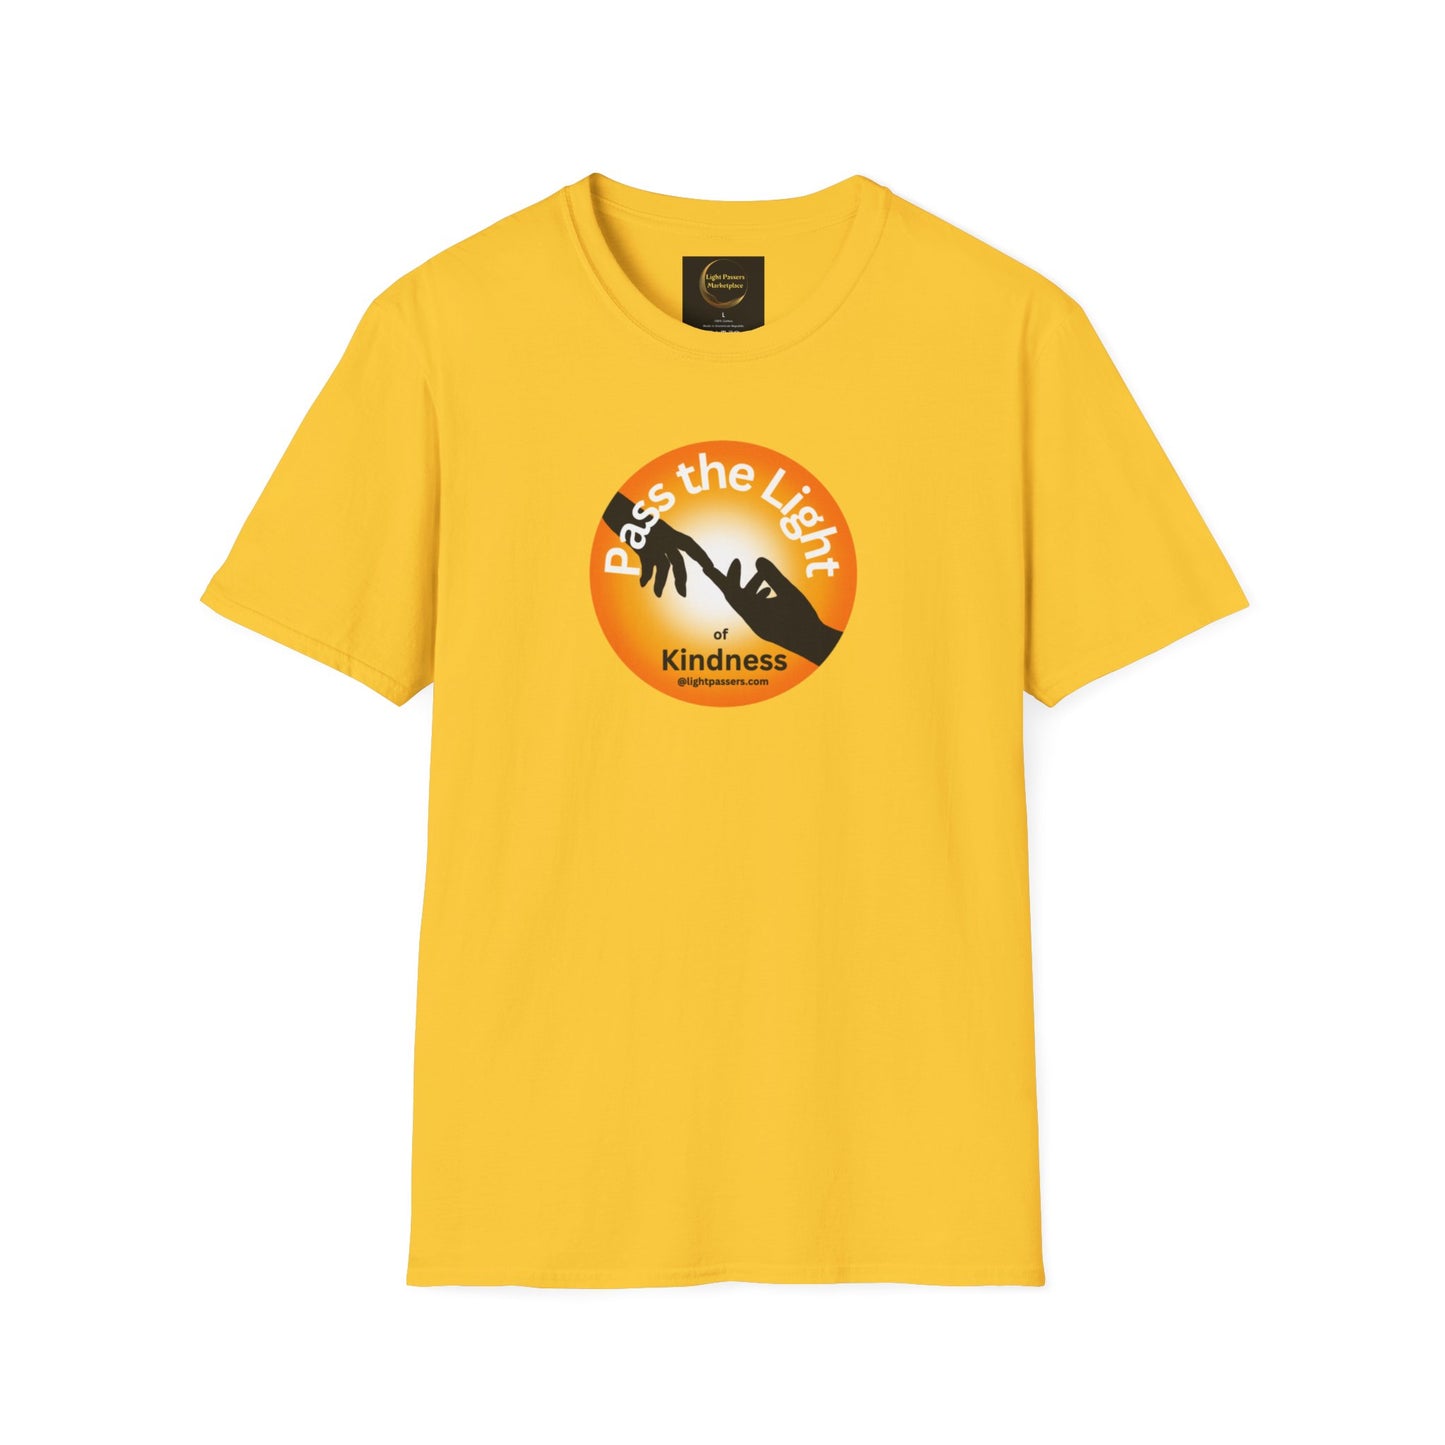 Light Passers Marketplace Golden Ball Pass the Light Unisex Gildan Soft Cotton T-shirt Simple Messages